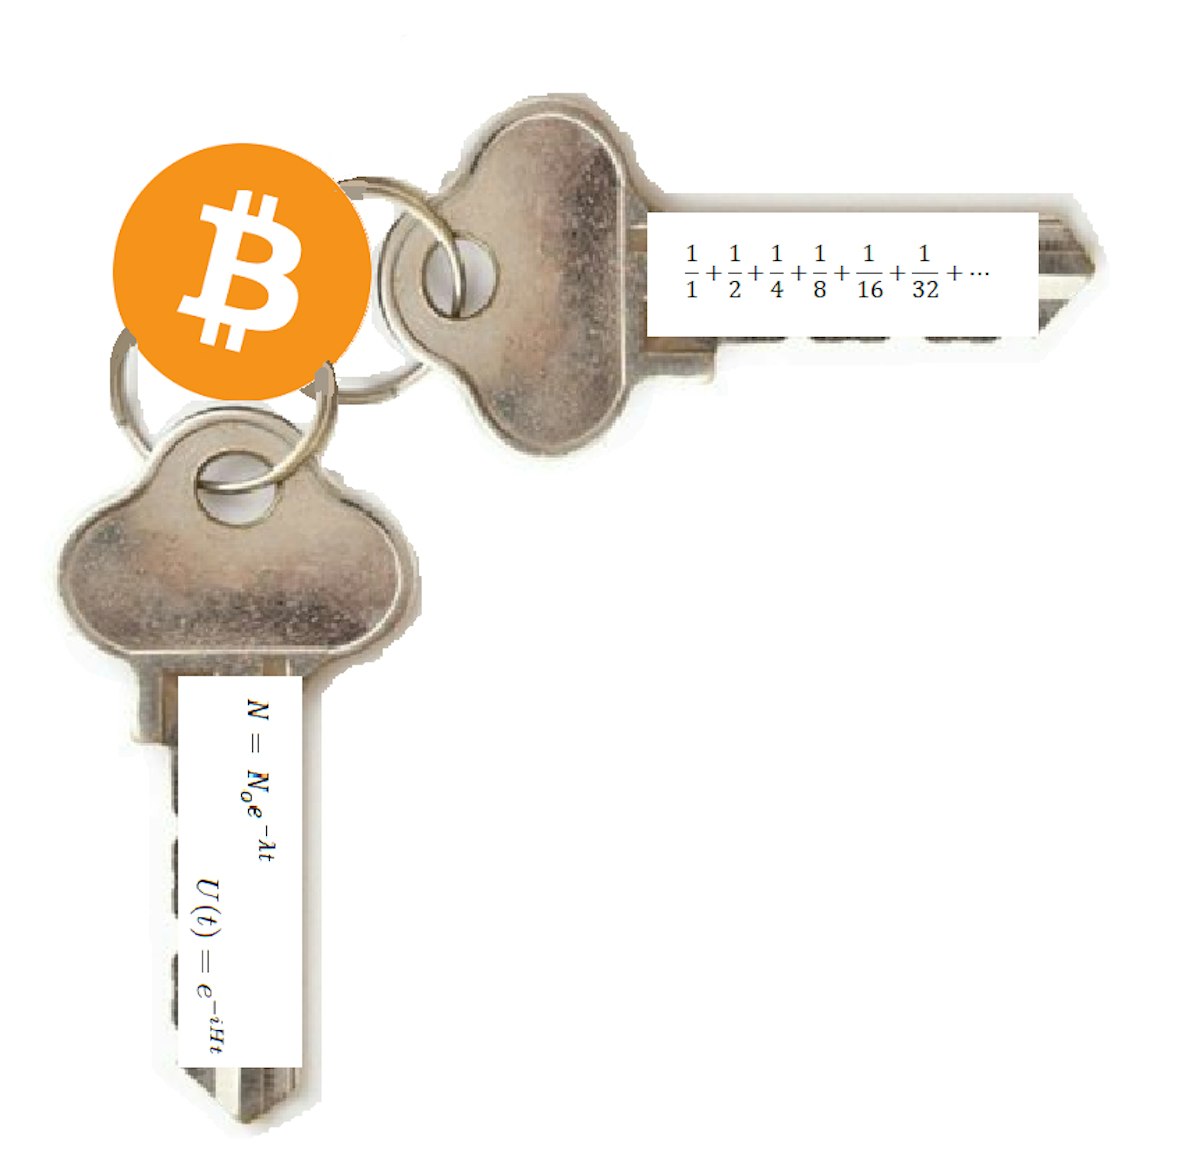 featured image - Les mystères mathématiques de la réduction de moitié du Bitcoin